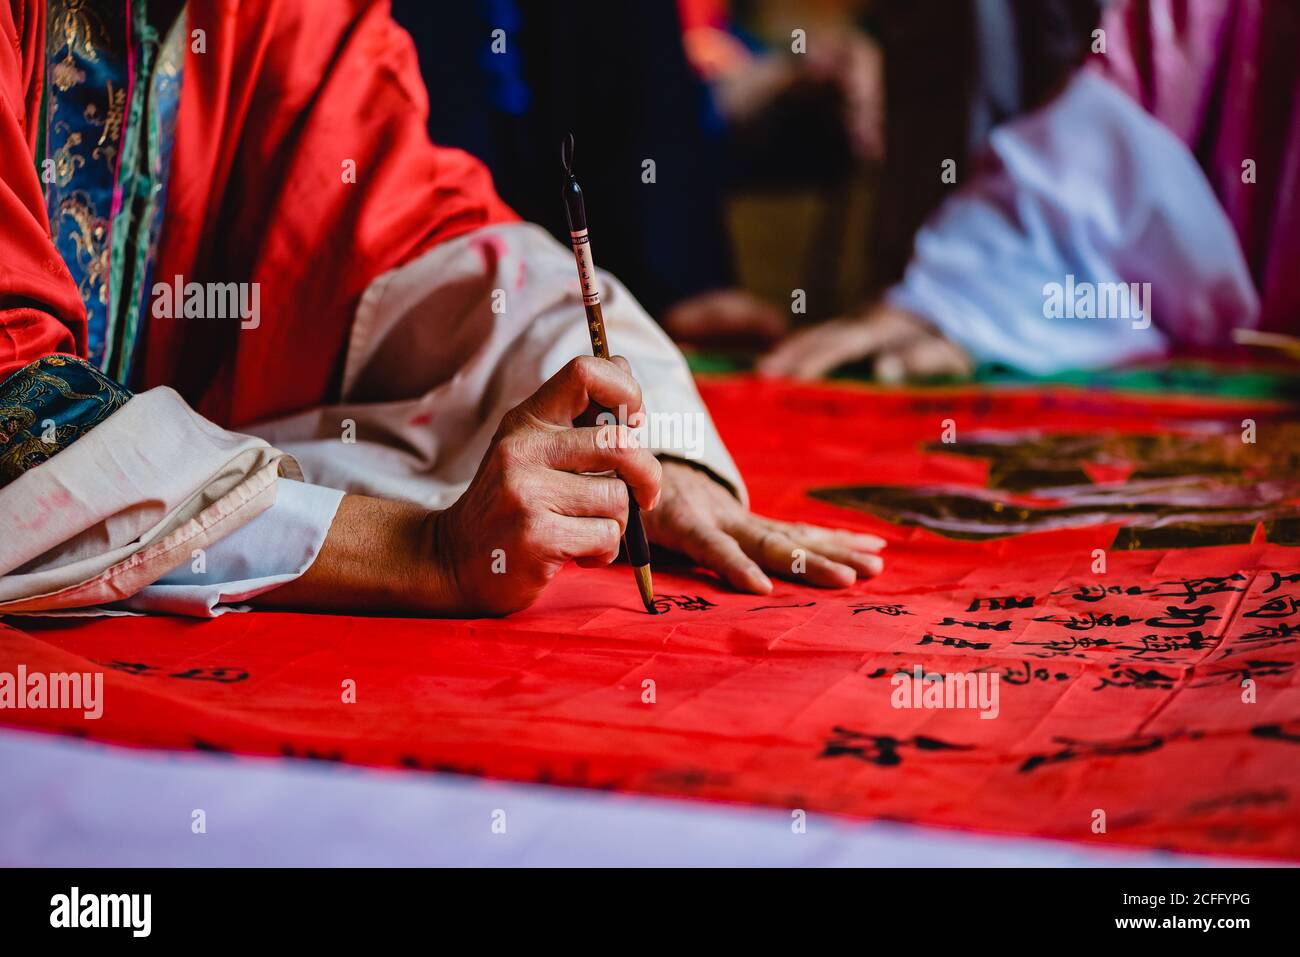 Maître de culture en kimono peinture hiéroglyphes noirs avec de l'encre sur Textile rouge au temple de Hong Kong Banque D'Images